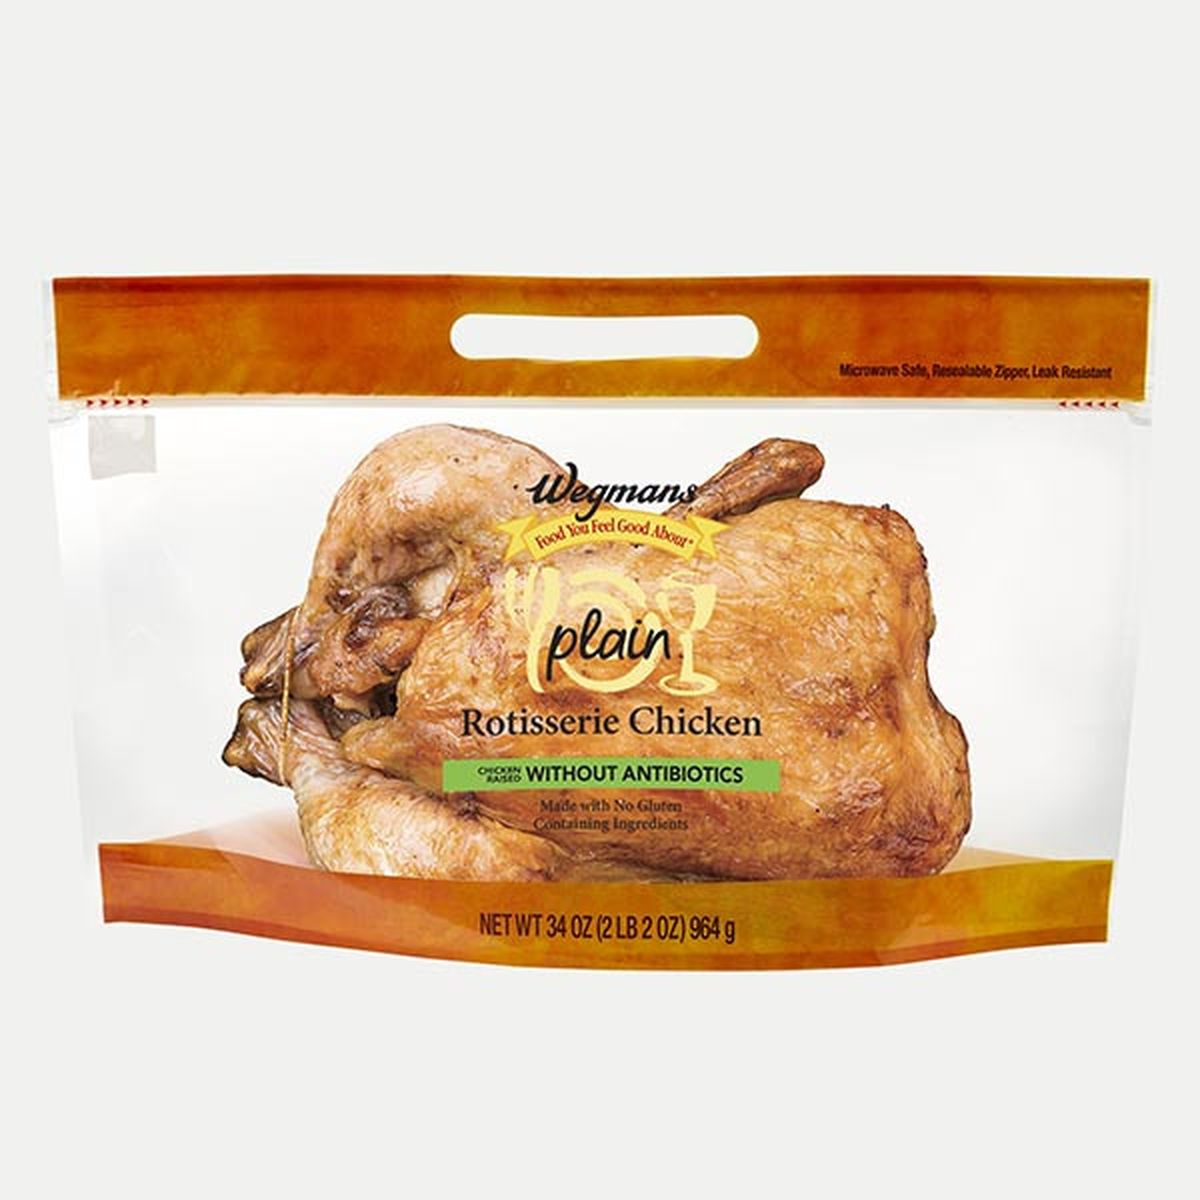 Calories in Wegmans Rotisserie Chicken, Plain